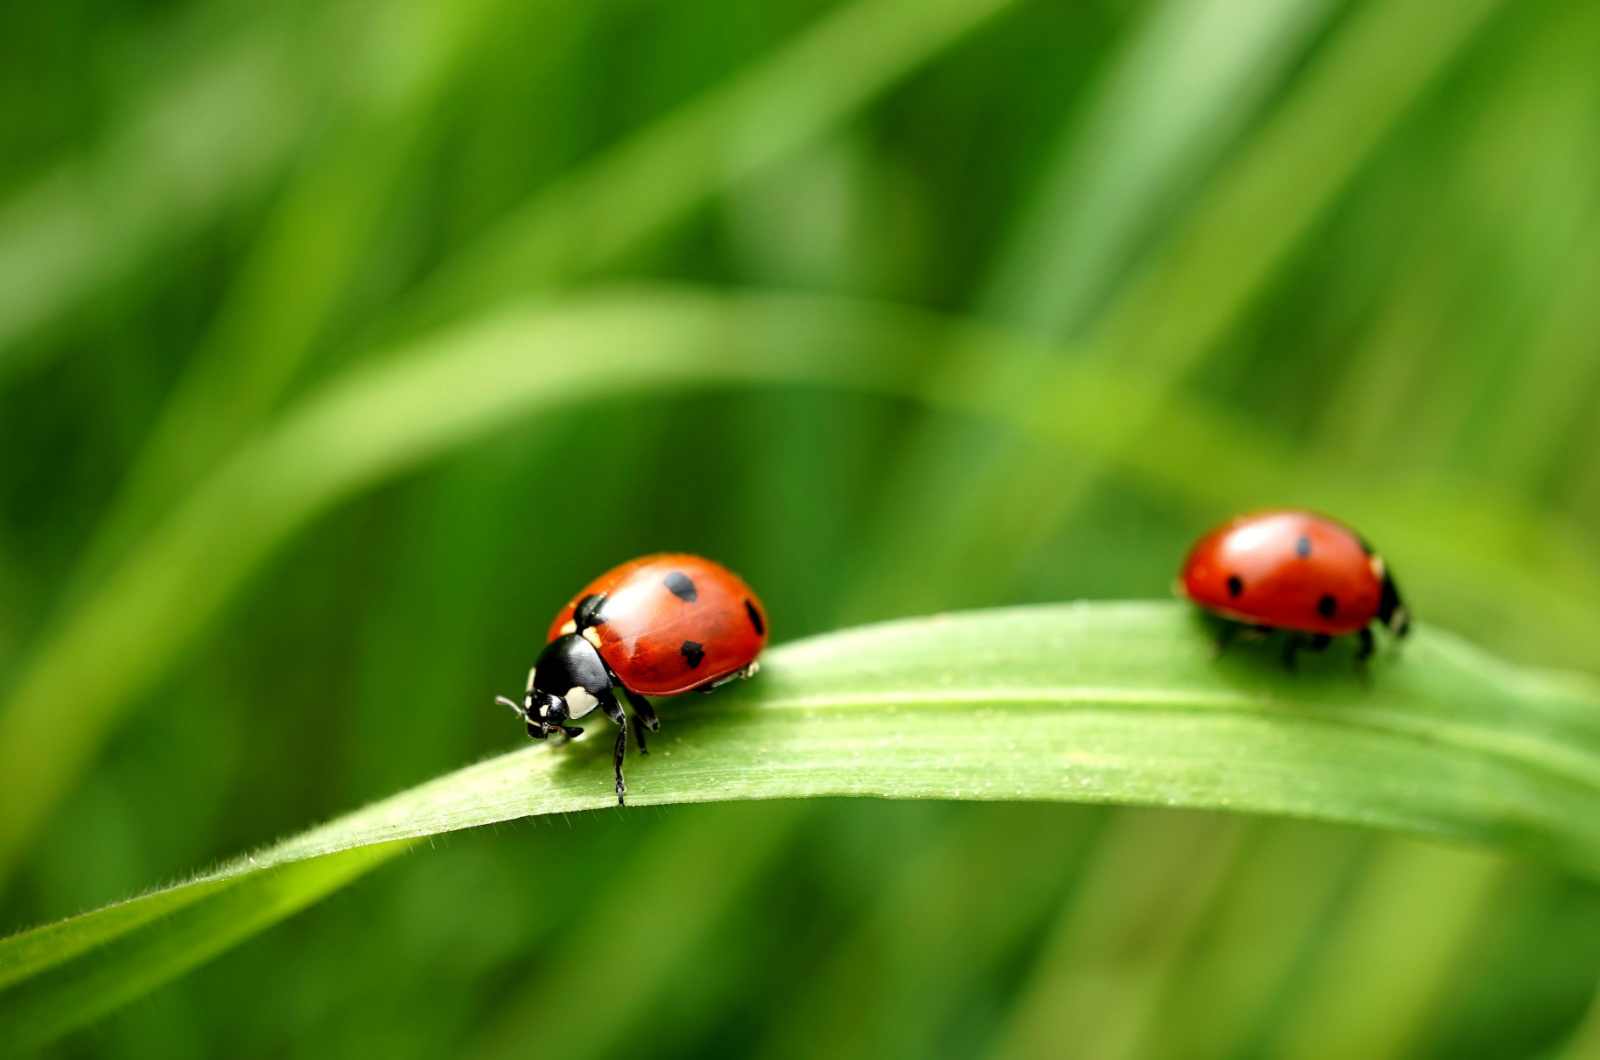 Two ladybugs